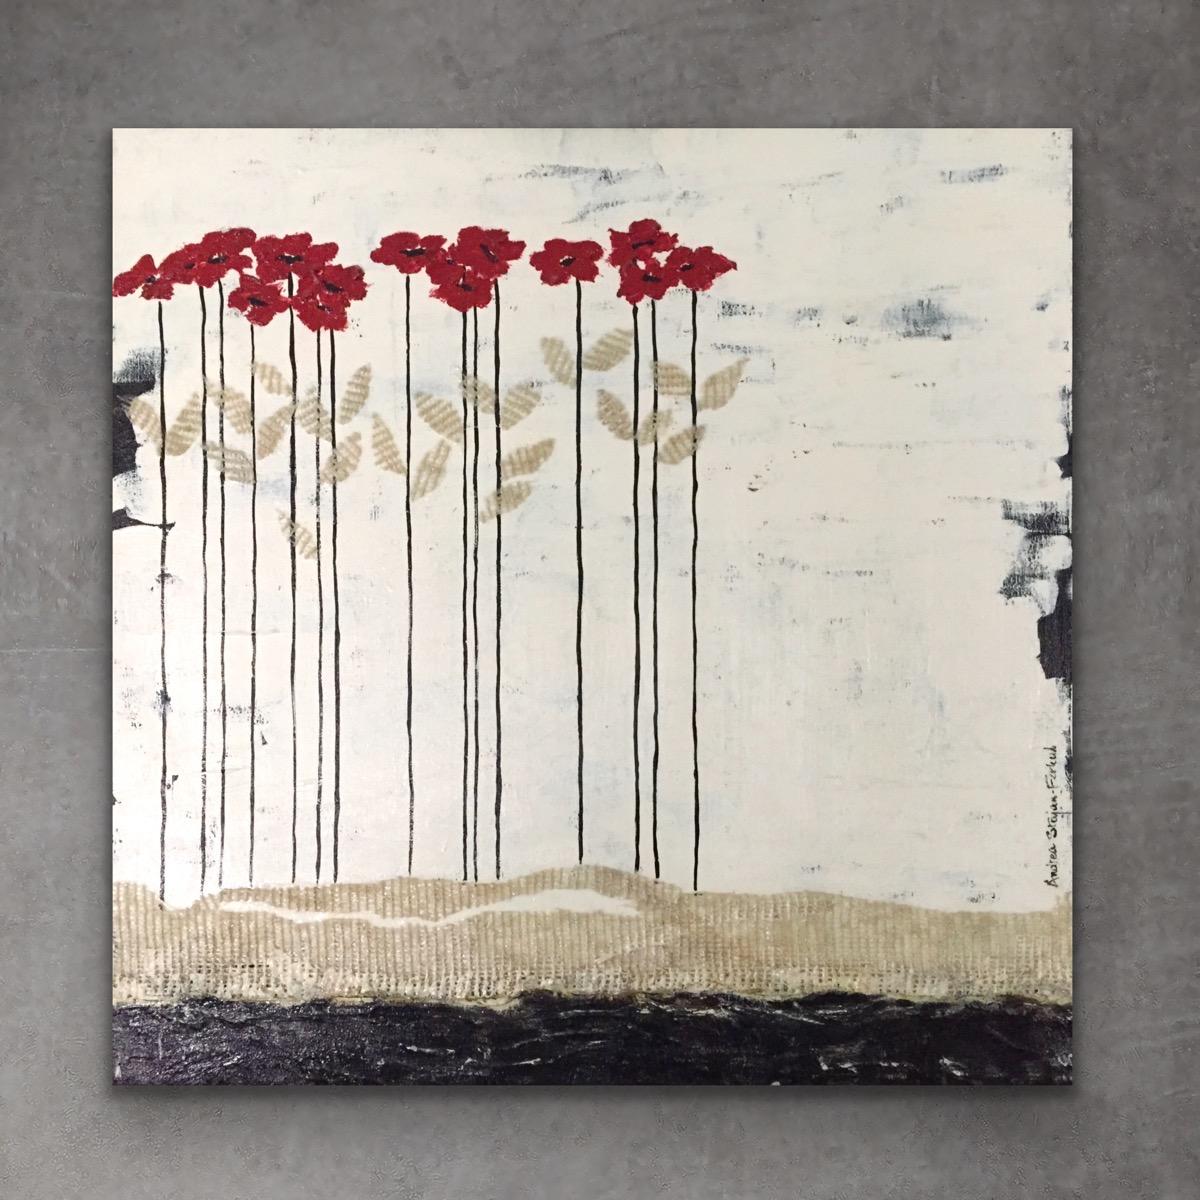 Têtes rouges ll (24"x24", peinture de paysage à fleurs rouges, noires et blanches) 